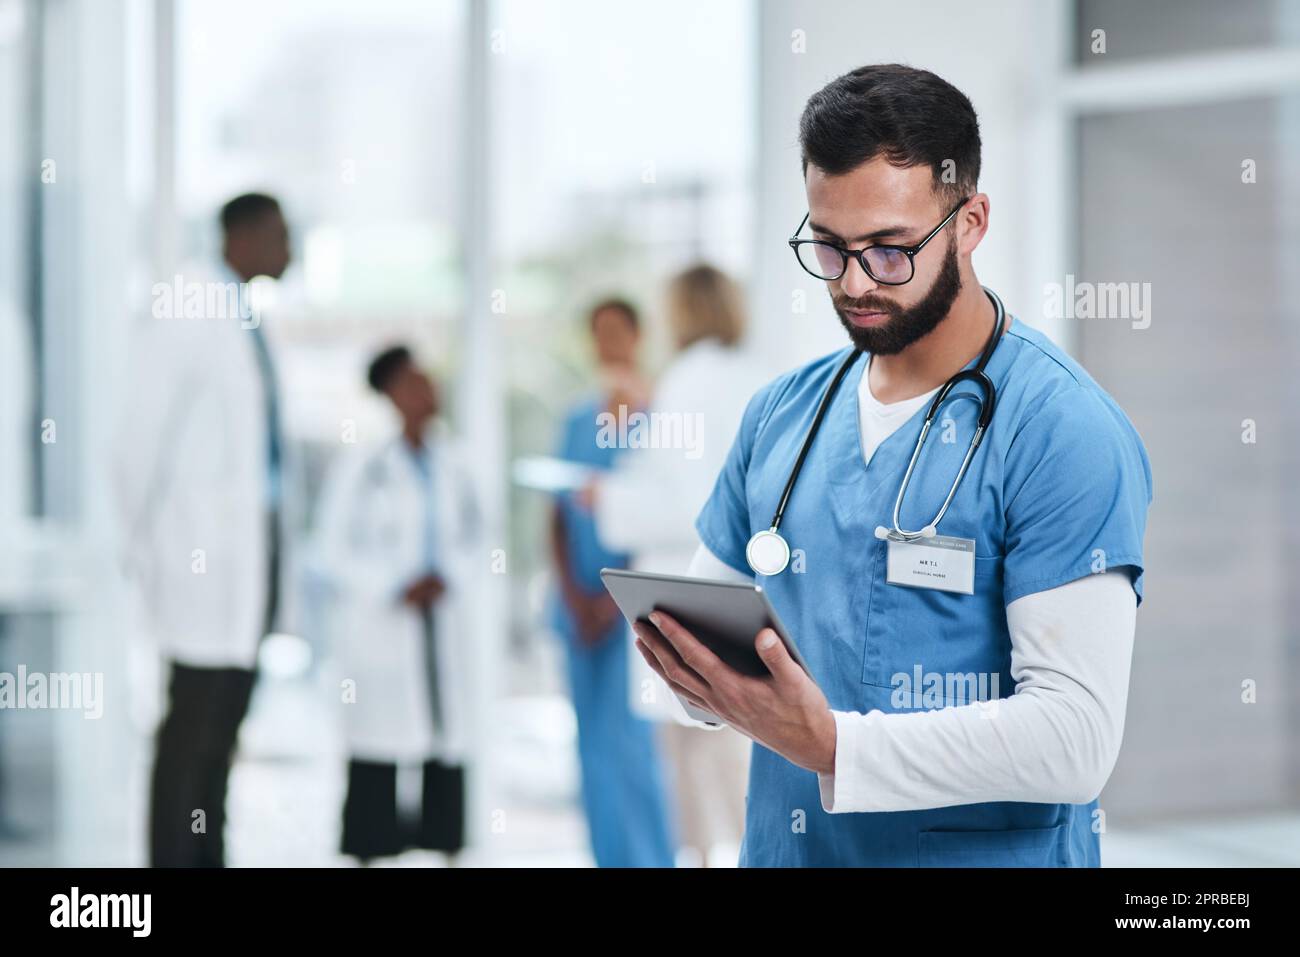 Tuffarsi in alcune ricerche cliniche. Un giovane medico che usa un tablet digitale in un ospedale. Foto Stock